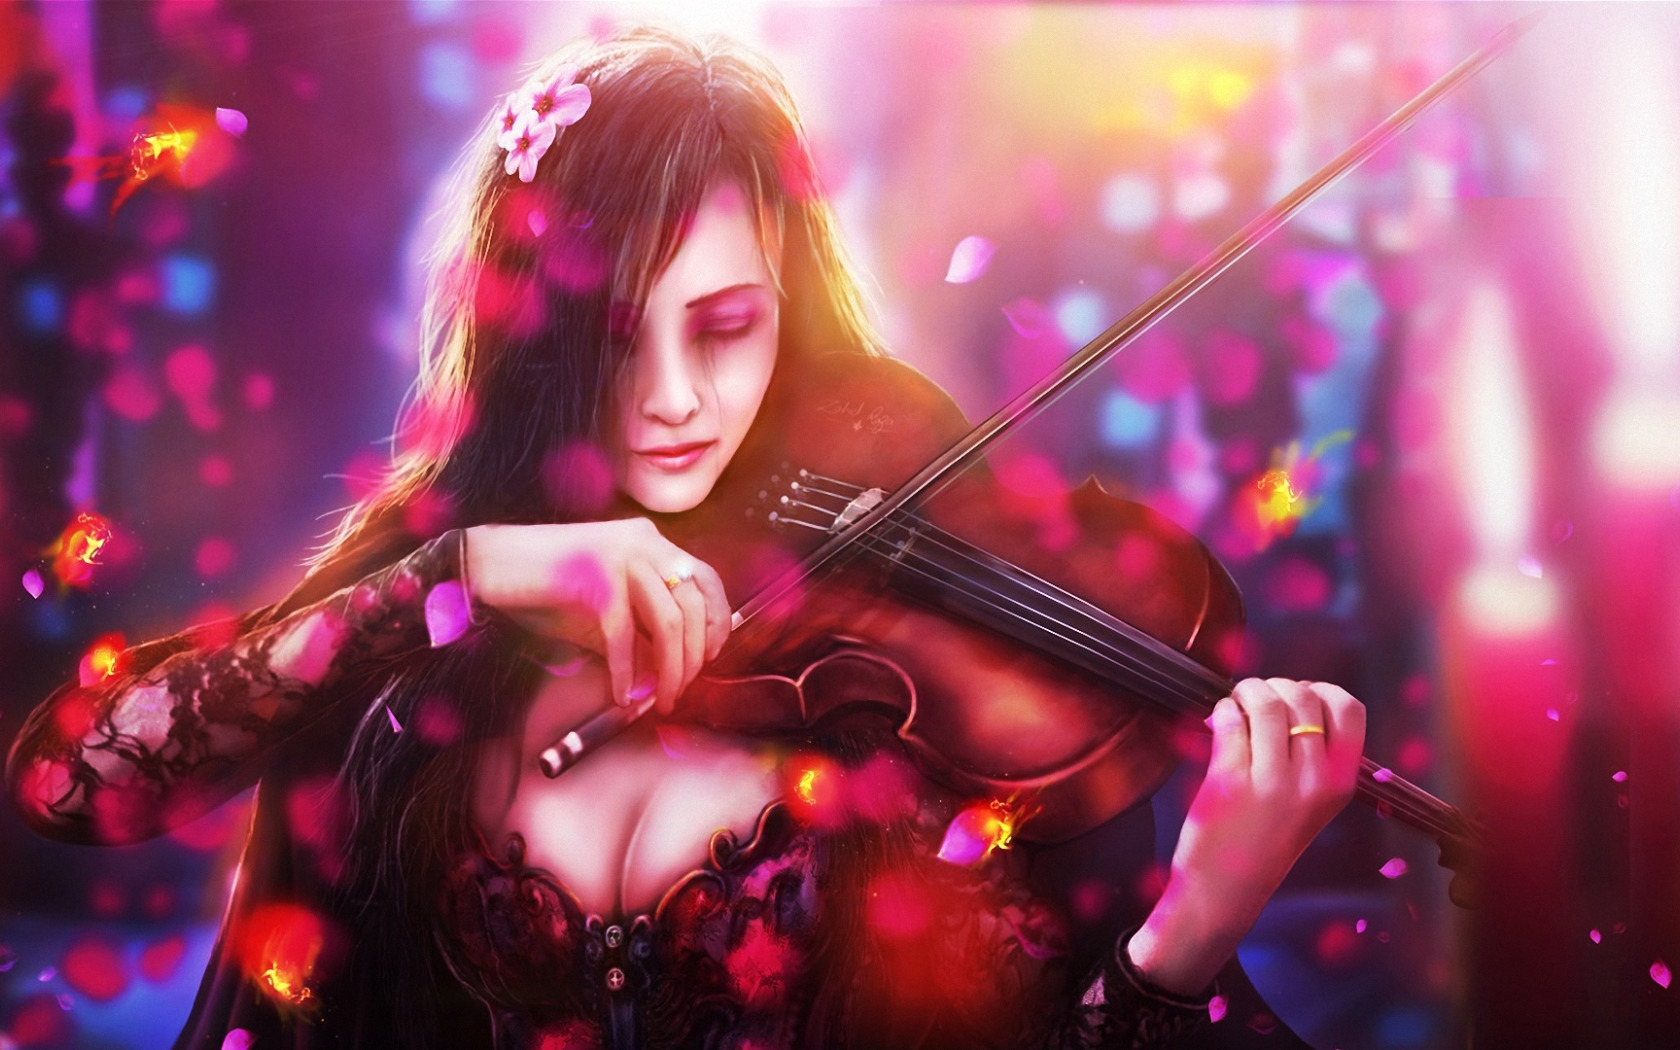 Песня саруханова скрипка. Музыкант скрипач арт фэнтези. Девушки со скрипкой. Девушка со скрипкой арт. Девушка с музыкальным инструментом.